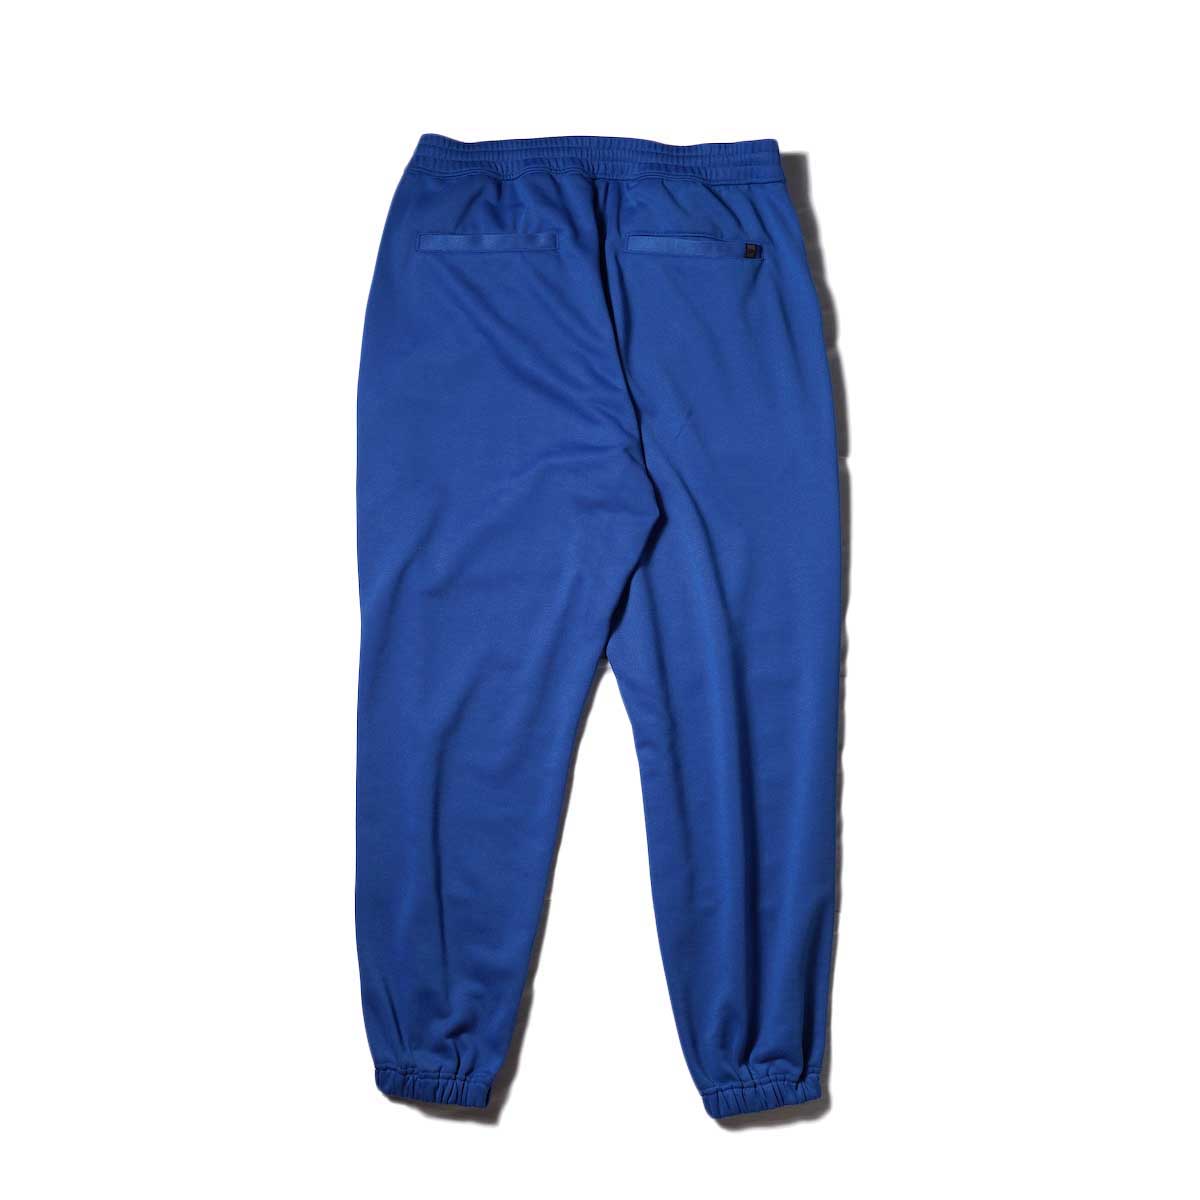 DAIWA PIER39 / TECH SWEAT PANTS BASIC (Royal Blue)背面